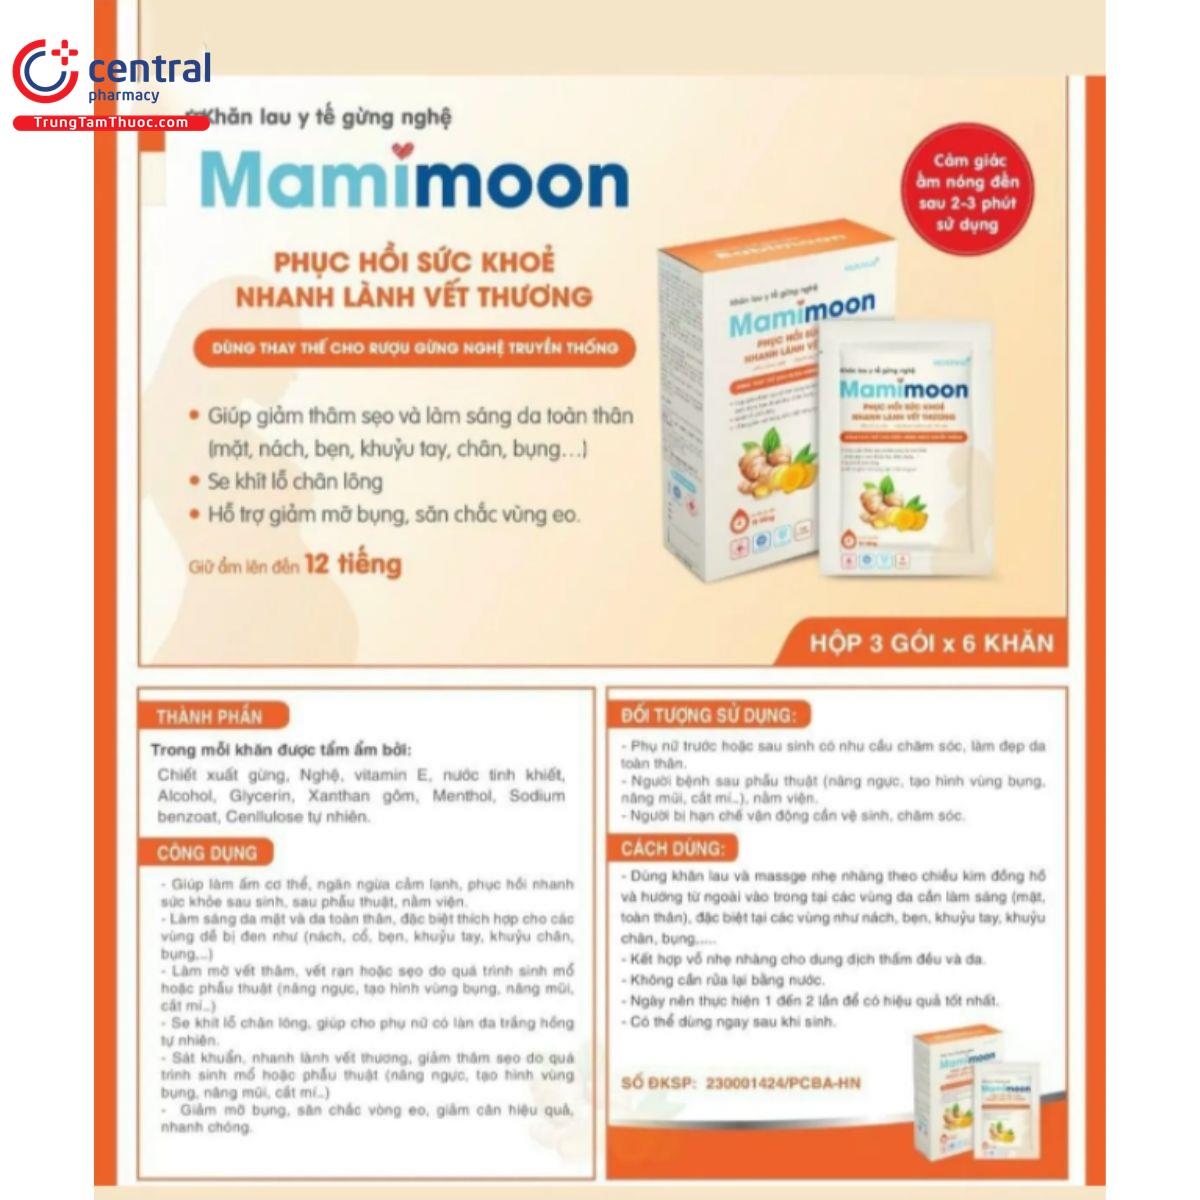 mamimoon 5 I3443